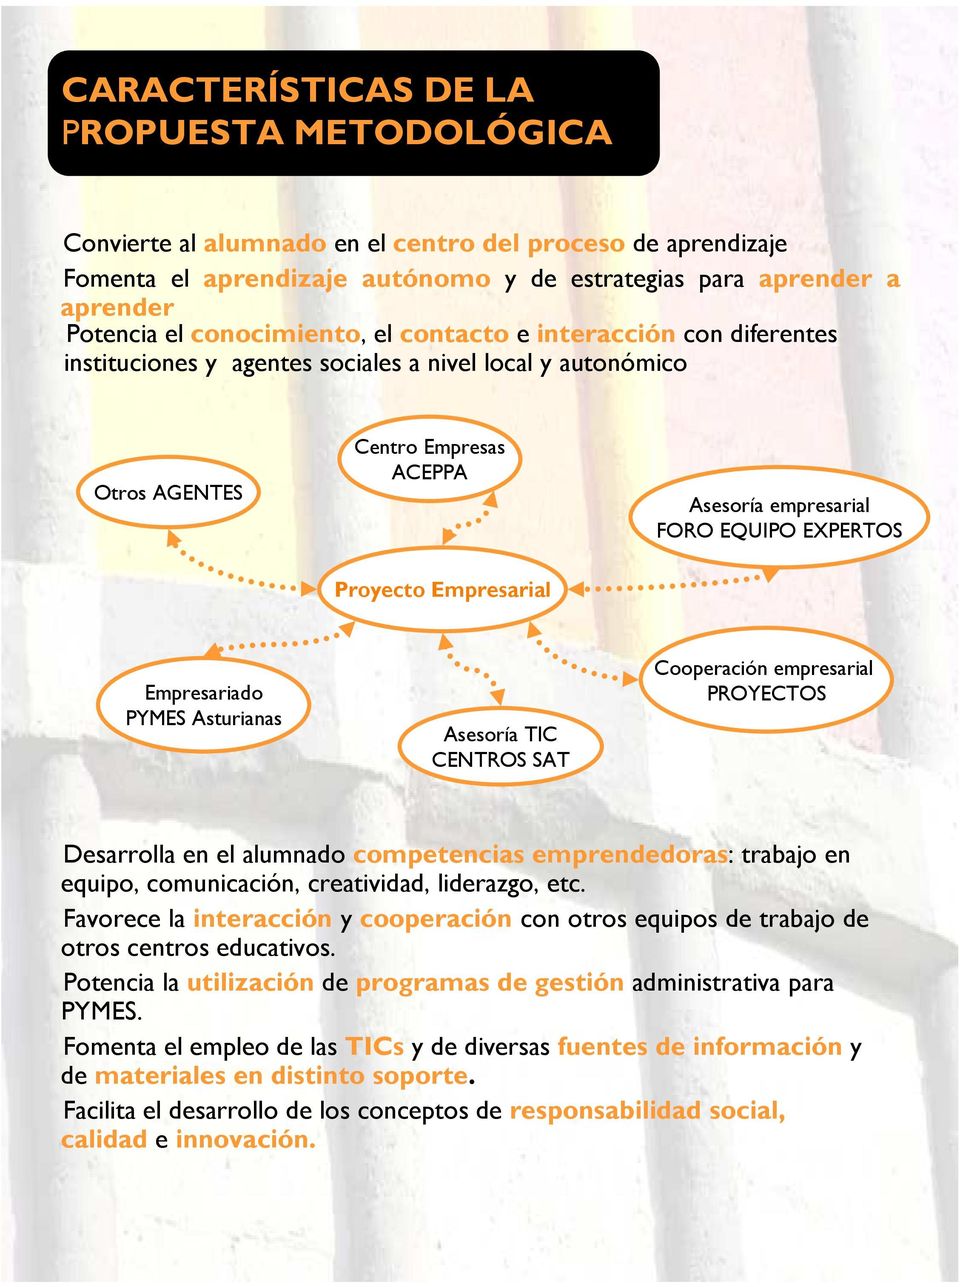 Proyecto Empresarial Empresariado PYMES Asturianas Asesoría TIC CENTROS SAT Cooperación empresarial PROYECTOS Desarrolla en el alumnado competencias emprendedoras: trabajo en equipo, comunicación,